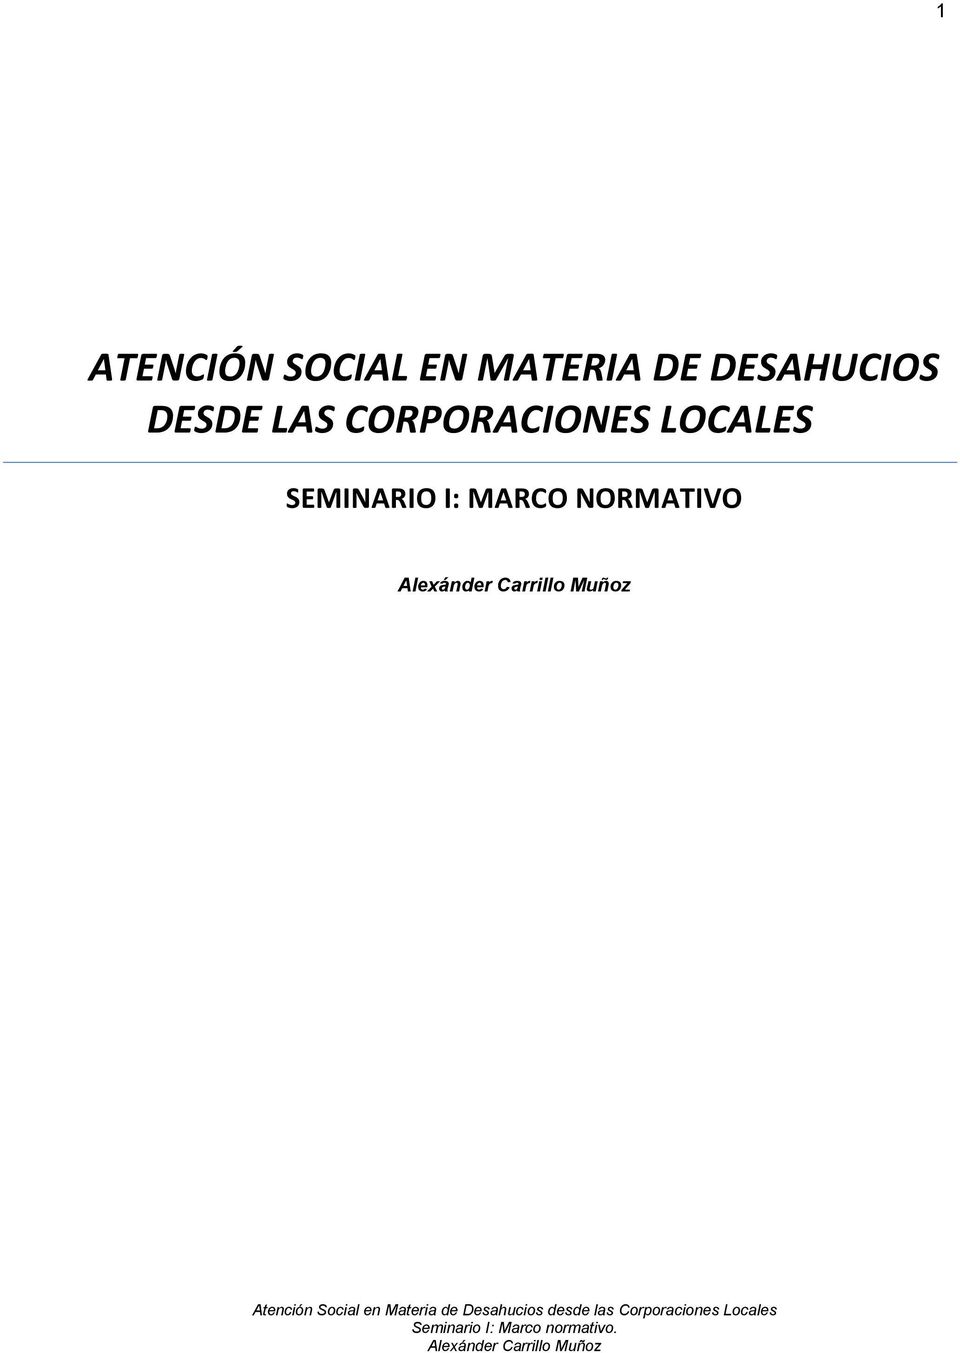 Carrillo Muñoz Atención Social en Materia de Desahucios desde